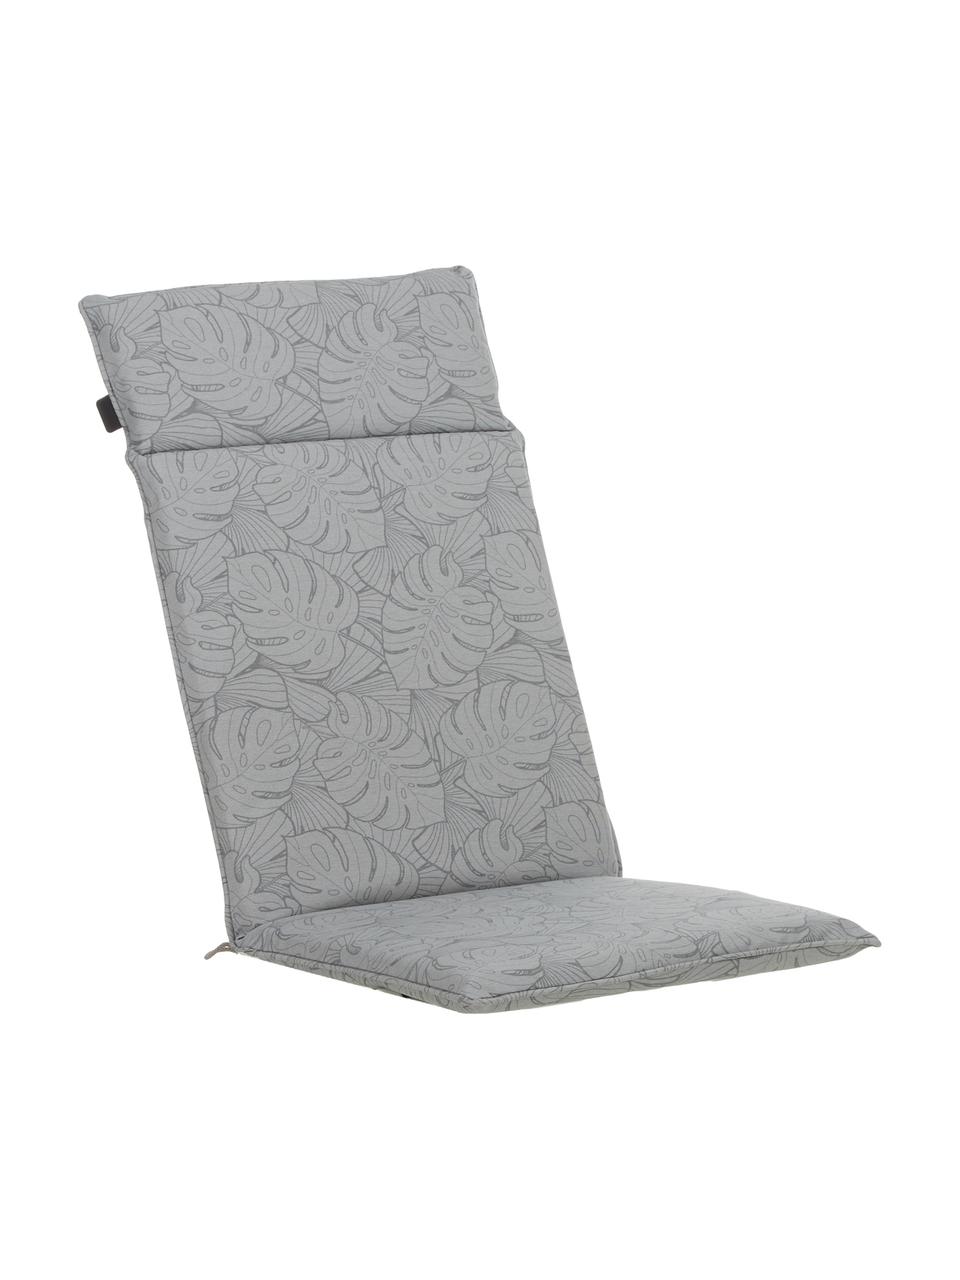 Cuscino sedia con schienale e stampa tropicale Palm, 50% cotone, 45% poliestere,
5% altre fibre, Grigio, Larg. 50 x Lung. 120 cm